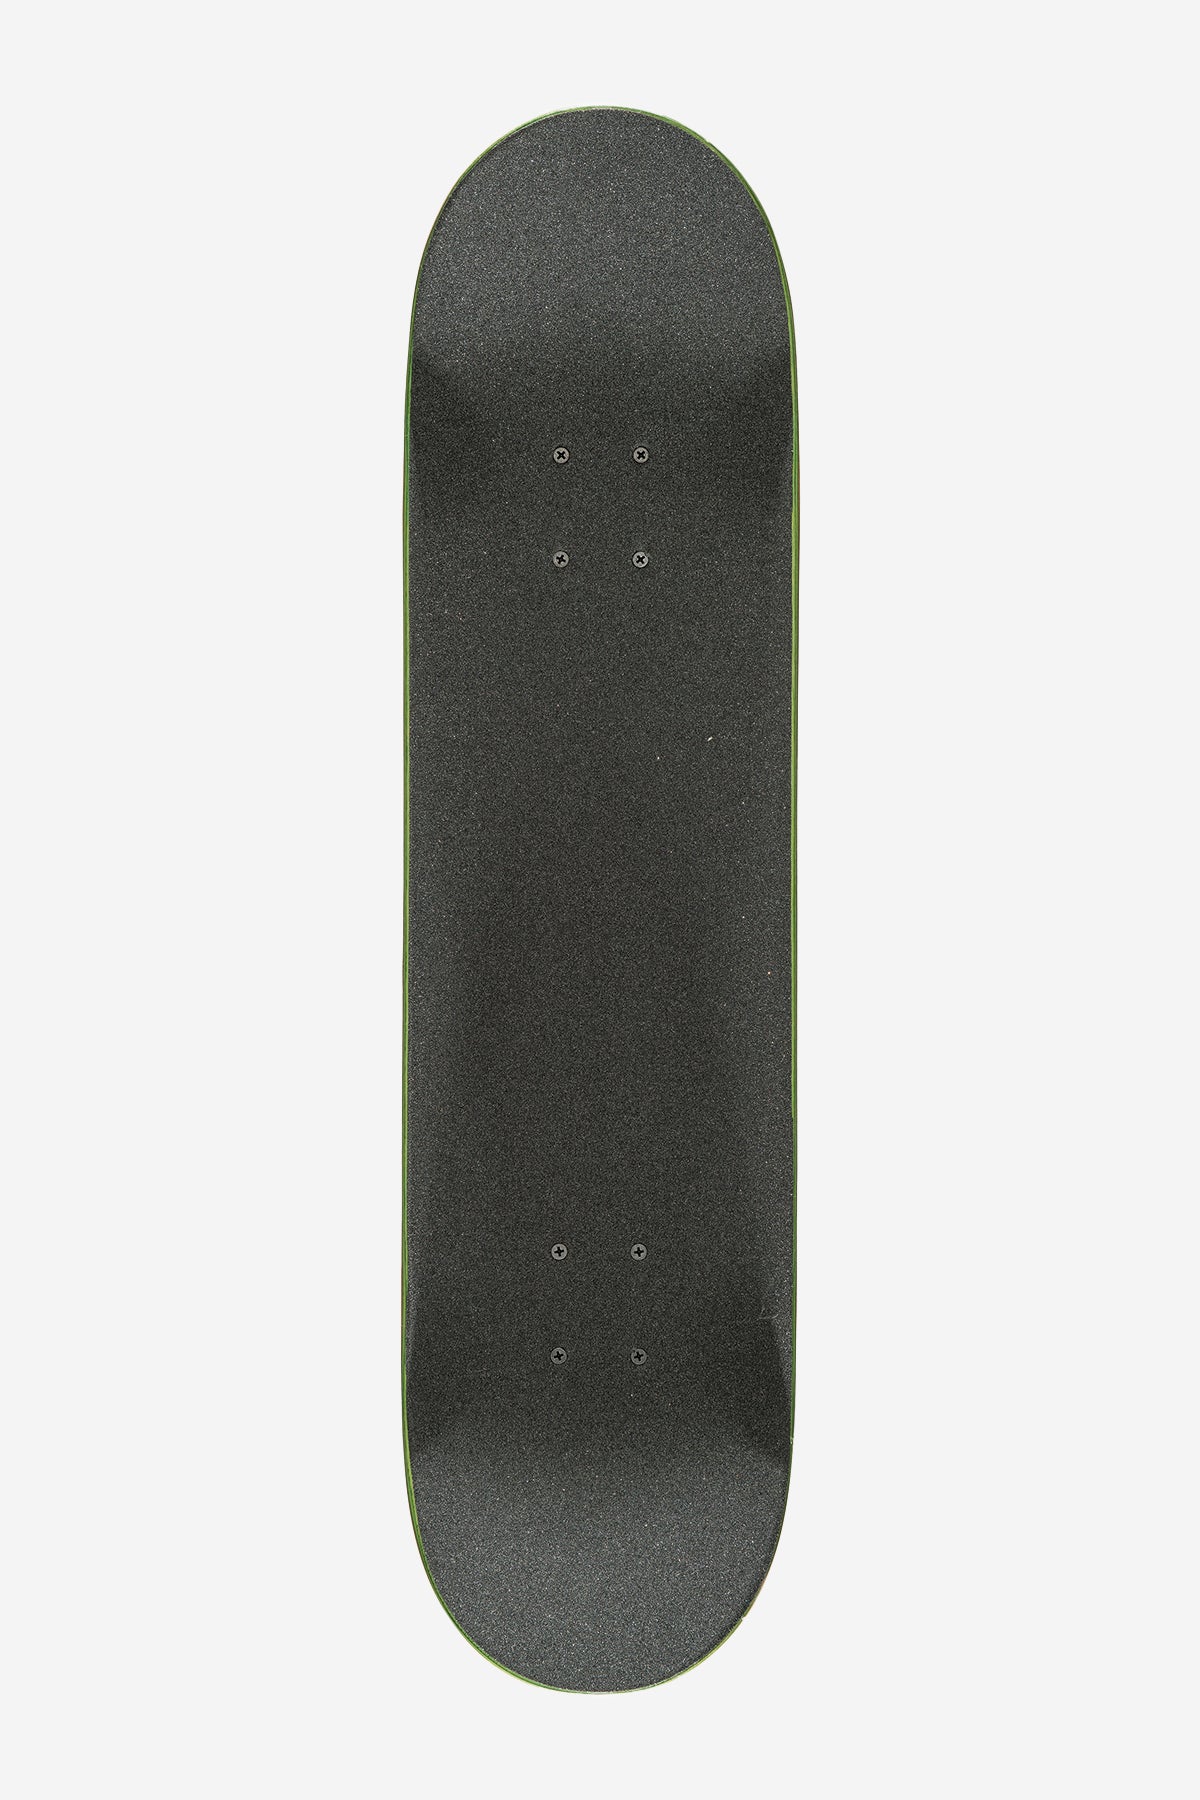 g1 palm off black 8.0" compleet skateboard